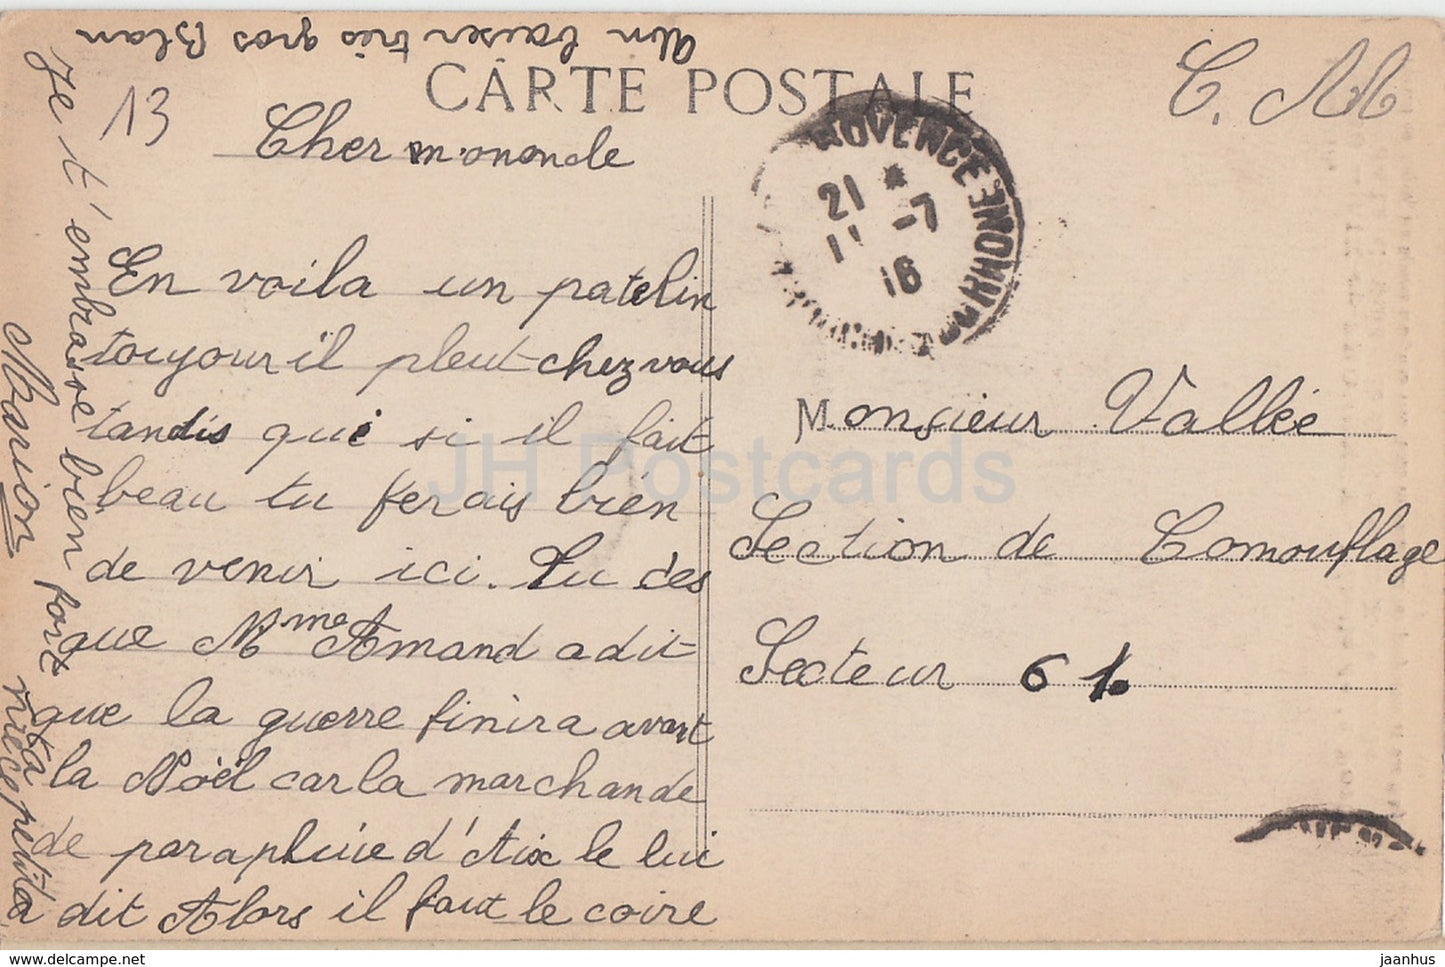 Aix en Provence - Details de la Porte de la Cathedrale St Sauveur - 2490 - old postcard - 1916 -France - used